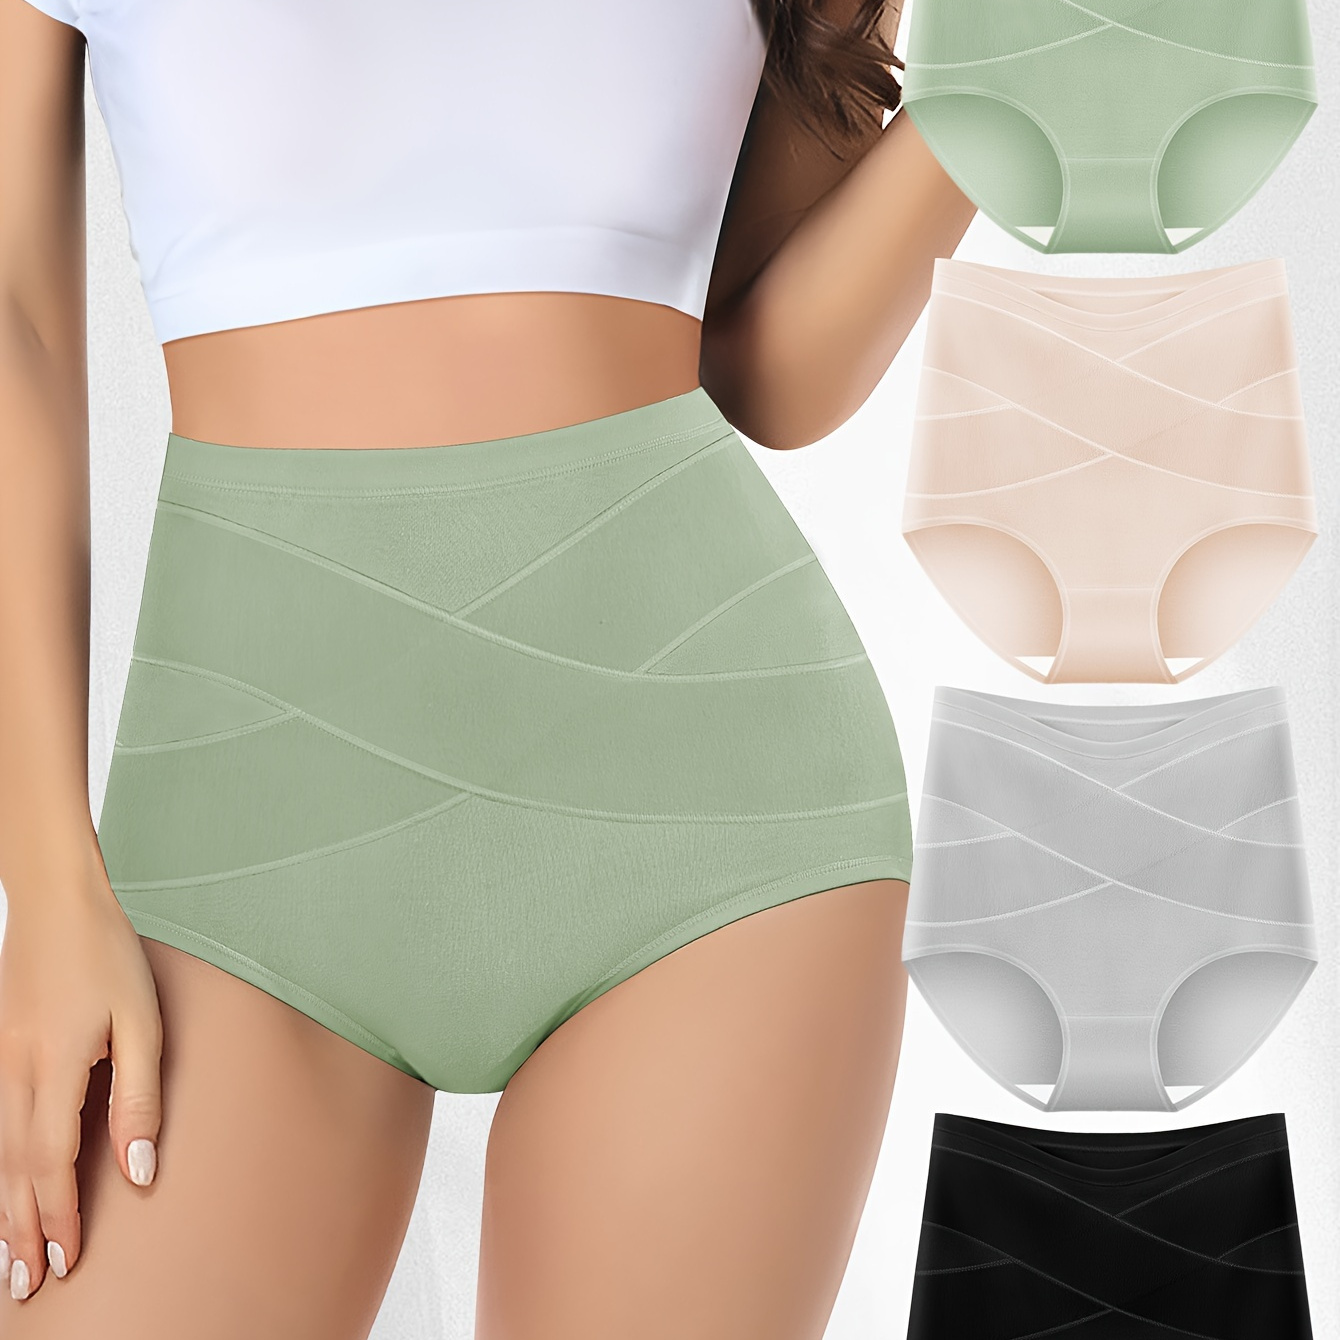 Buy Women's Full Brief Panties Breathable Seamless Underwear 4